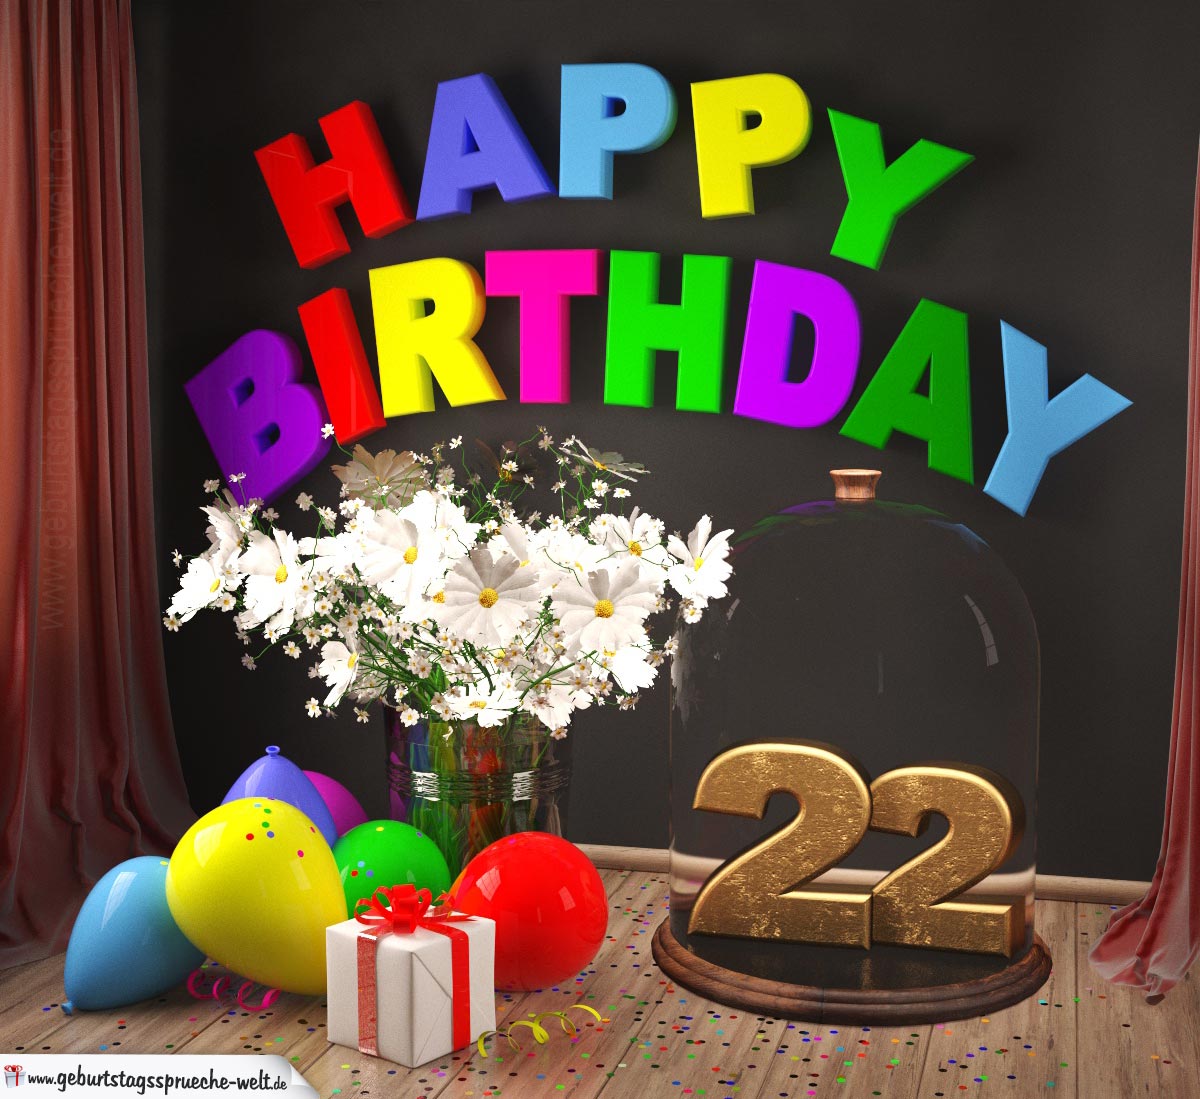 Happy Birthday 22 Jahre Gluckwunschkarte Mit Margeriten Blumenstrauss Luftballons Und Geschenk Unter Glasglocke Geburtstagsspruche Welt